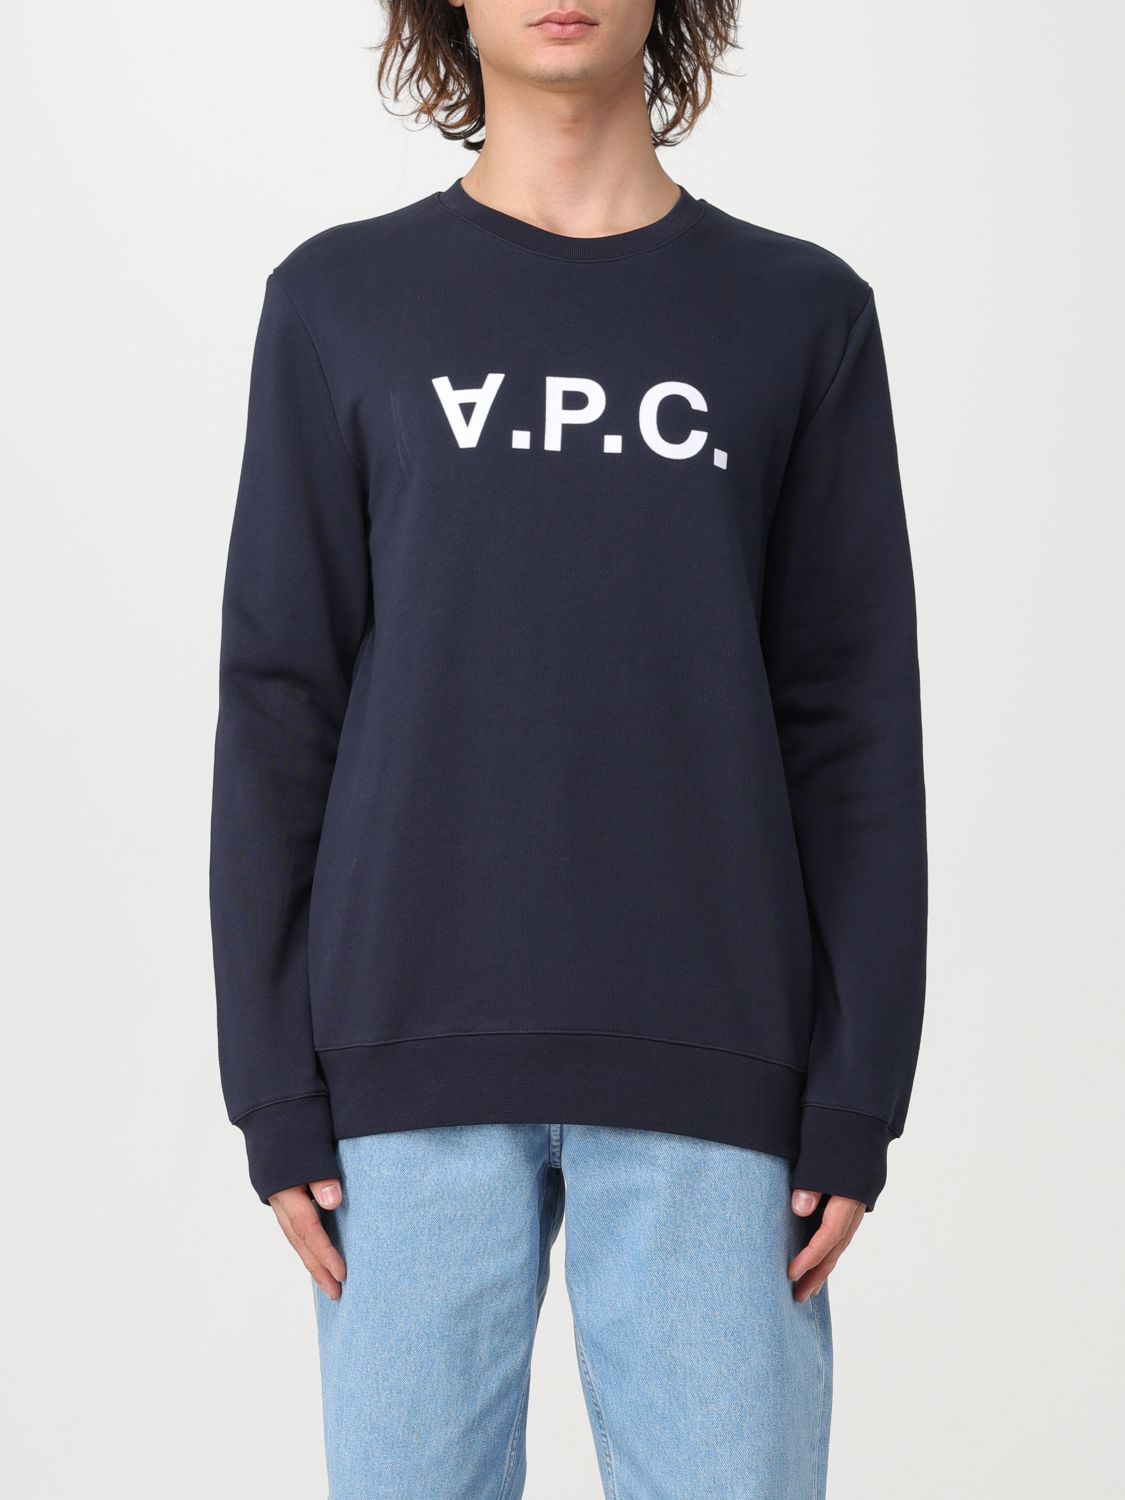 Shop Apc Sweatshirt A.p.c. Men Color White